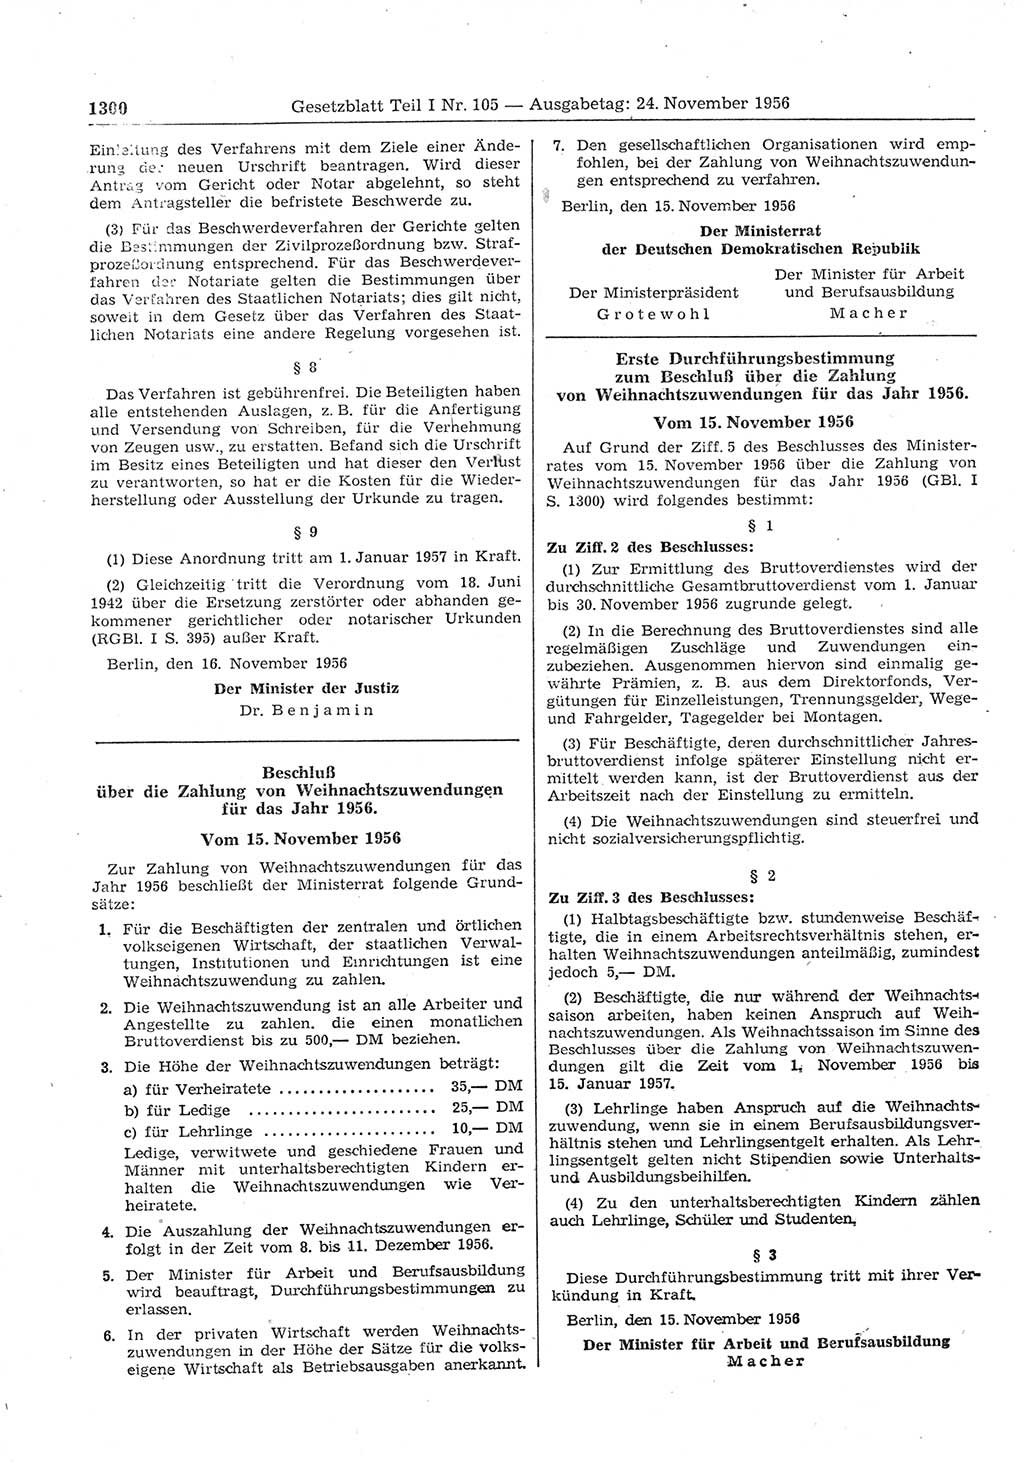 Gesetzblatt (GBl.) der Deutschen Demokratischen Republik (DDR) Teil Ⅰ 1956, Seite 1300 (GBl. DDR Ⅰ 1956, S. 1300)